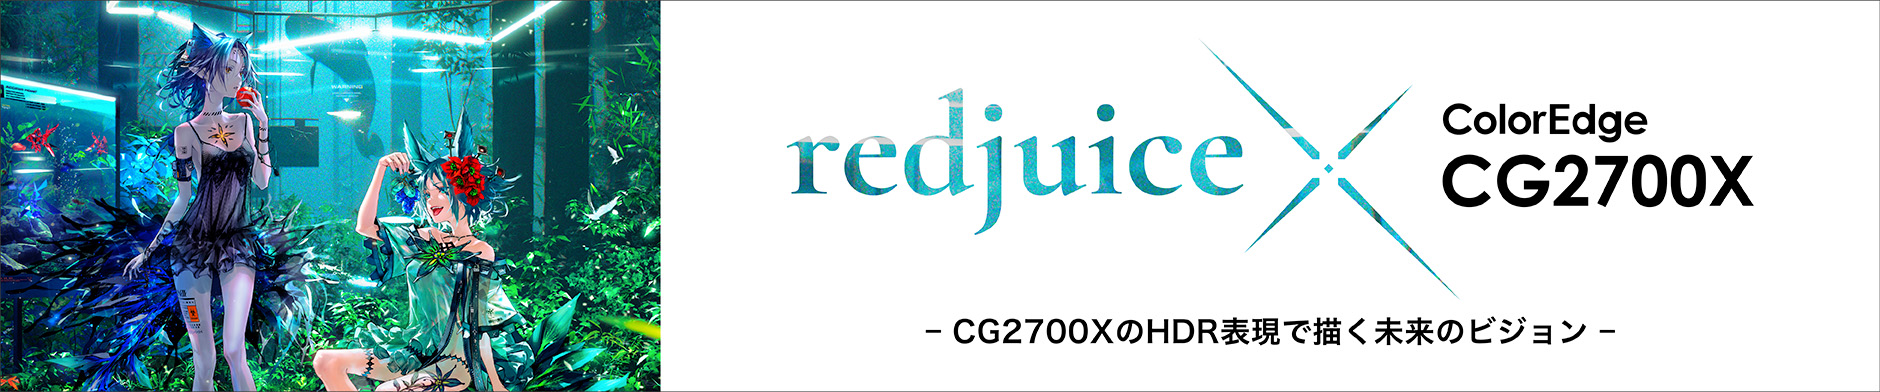 redjuice_CG2700X_bnr.jpg